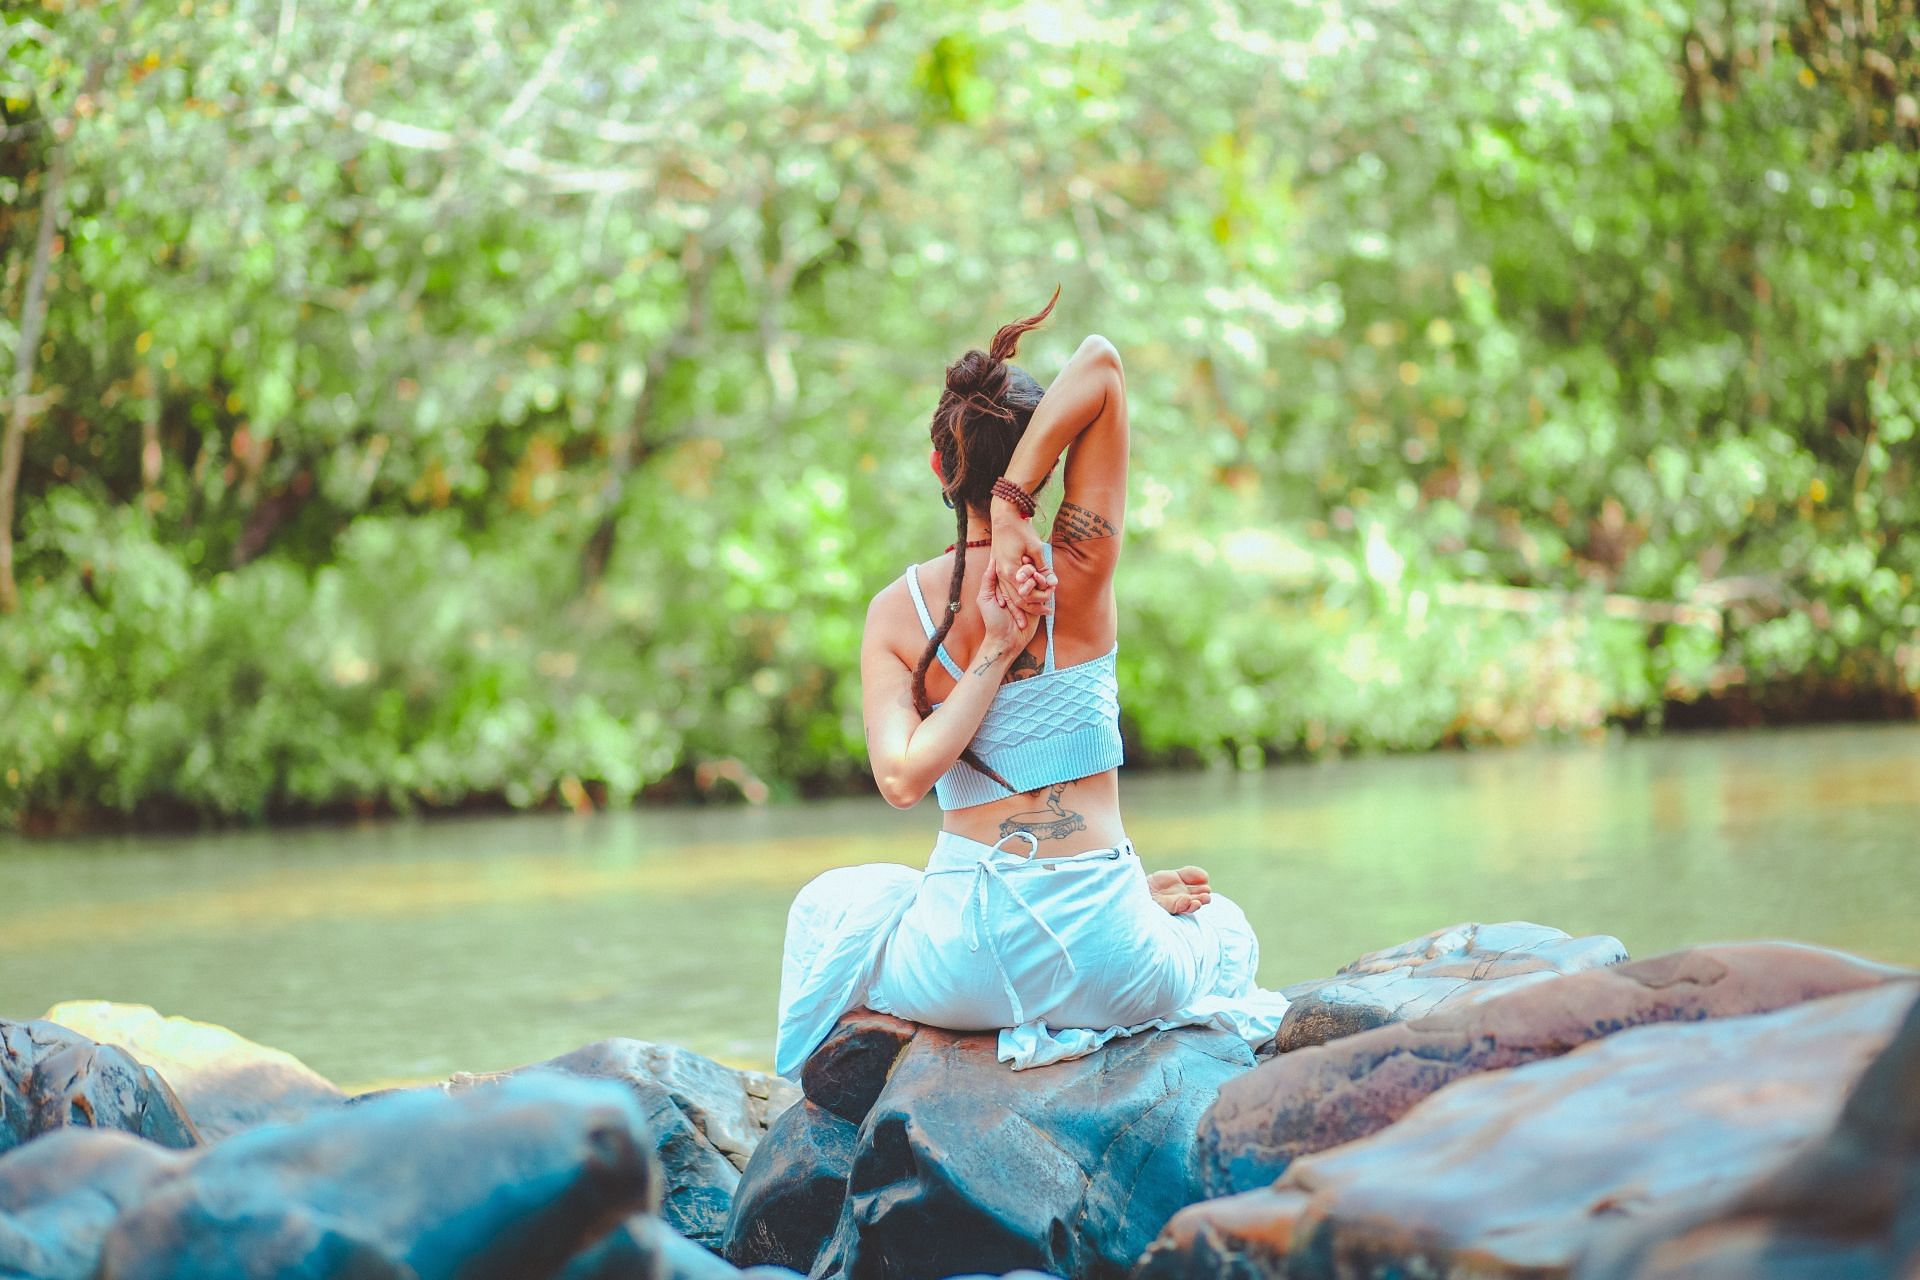 Woman performing yoga in outdoors. (Image via Pexels/ Lucas Pezeta)